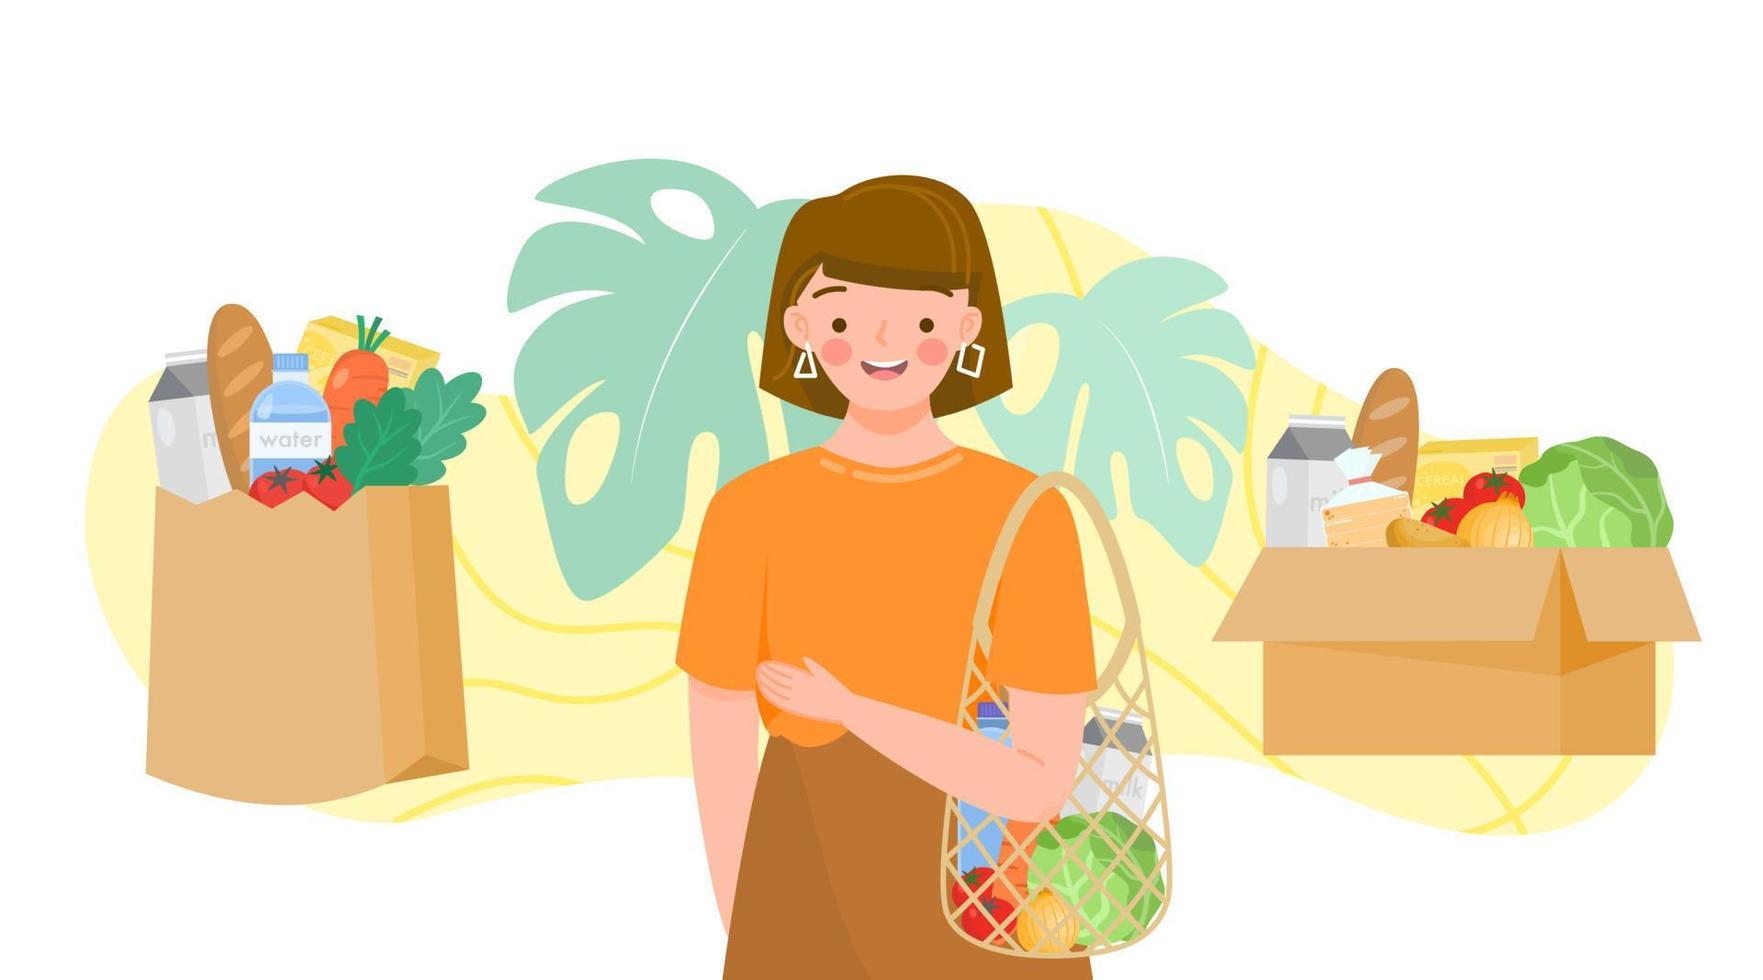 Mädchen, das Schildkrötentasche mit grünem Lebensmittelhändler hält. Set aus wiederverwendbaren Beuteln und Kartons mit Obst, Gemüse, Milch, Brot. lebensmittelprodukte in wiederverwendung öko- und papierverpackung.bio-produkte vom bauernhof. vektor